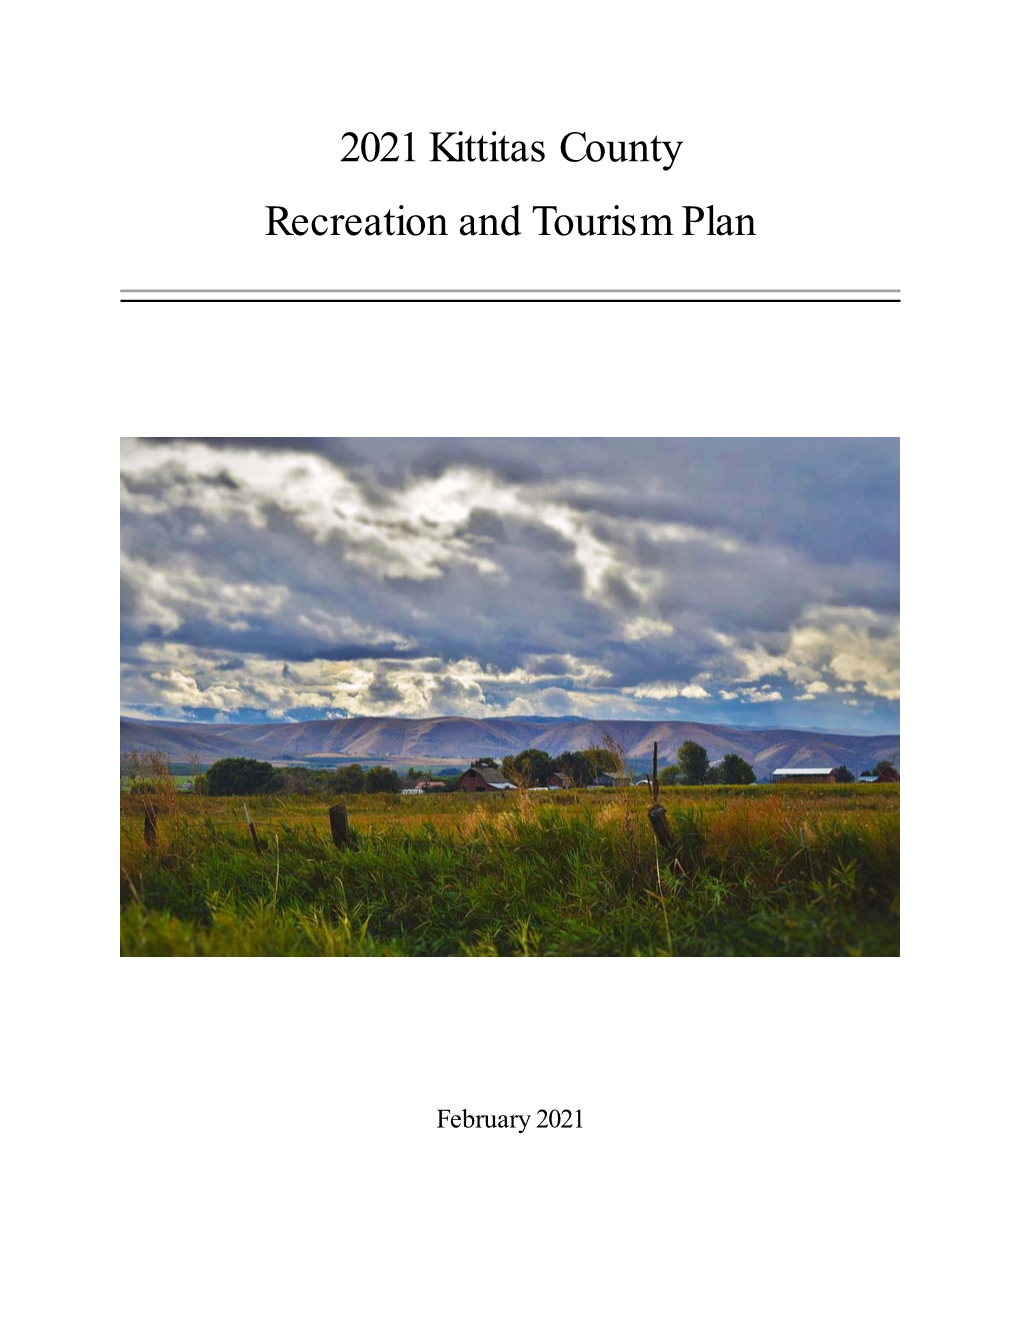 2021 Kittitas County Recreation and Tourism Plan